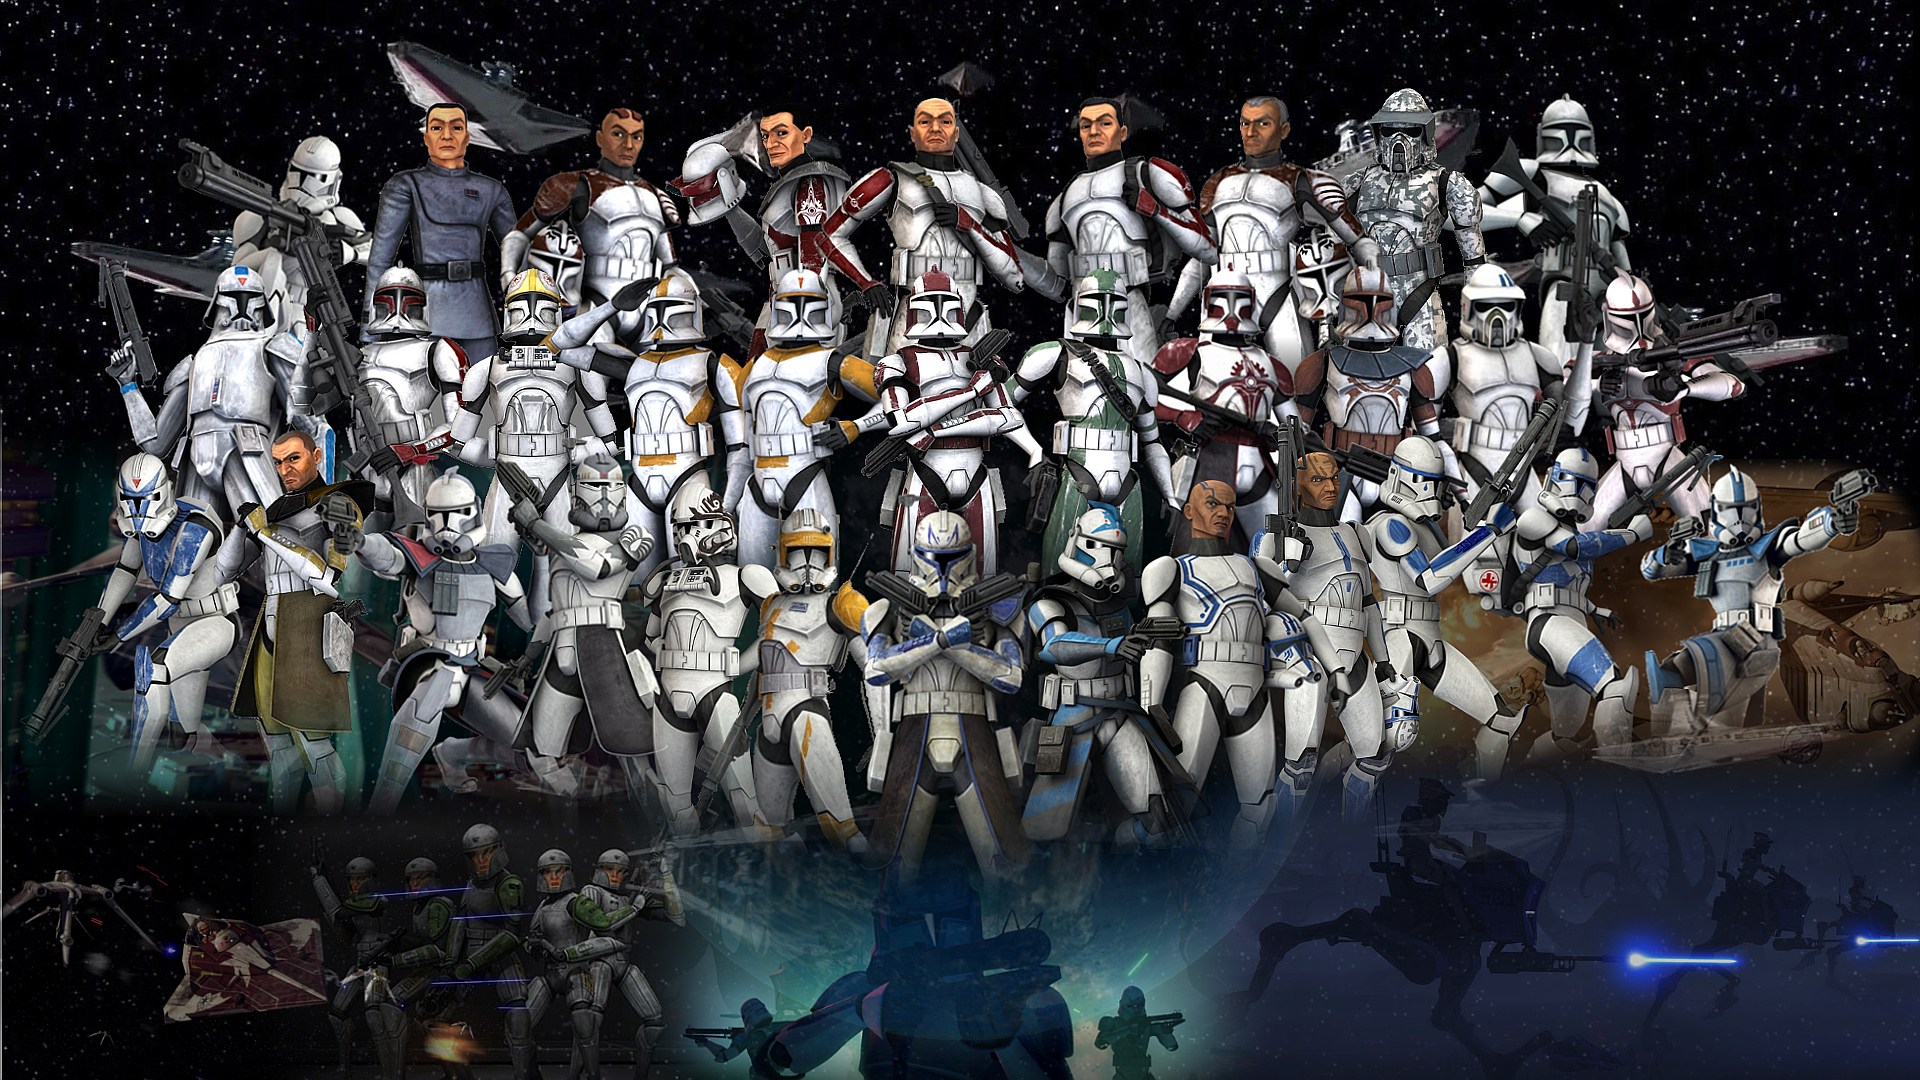 Storm Trooper helmet evolution | Star wars wallpaper, Star wars poster,  Star wars images